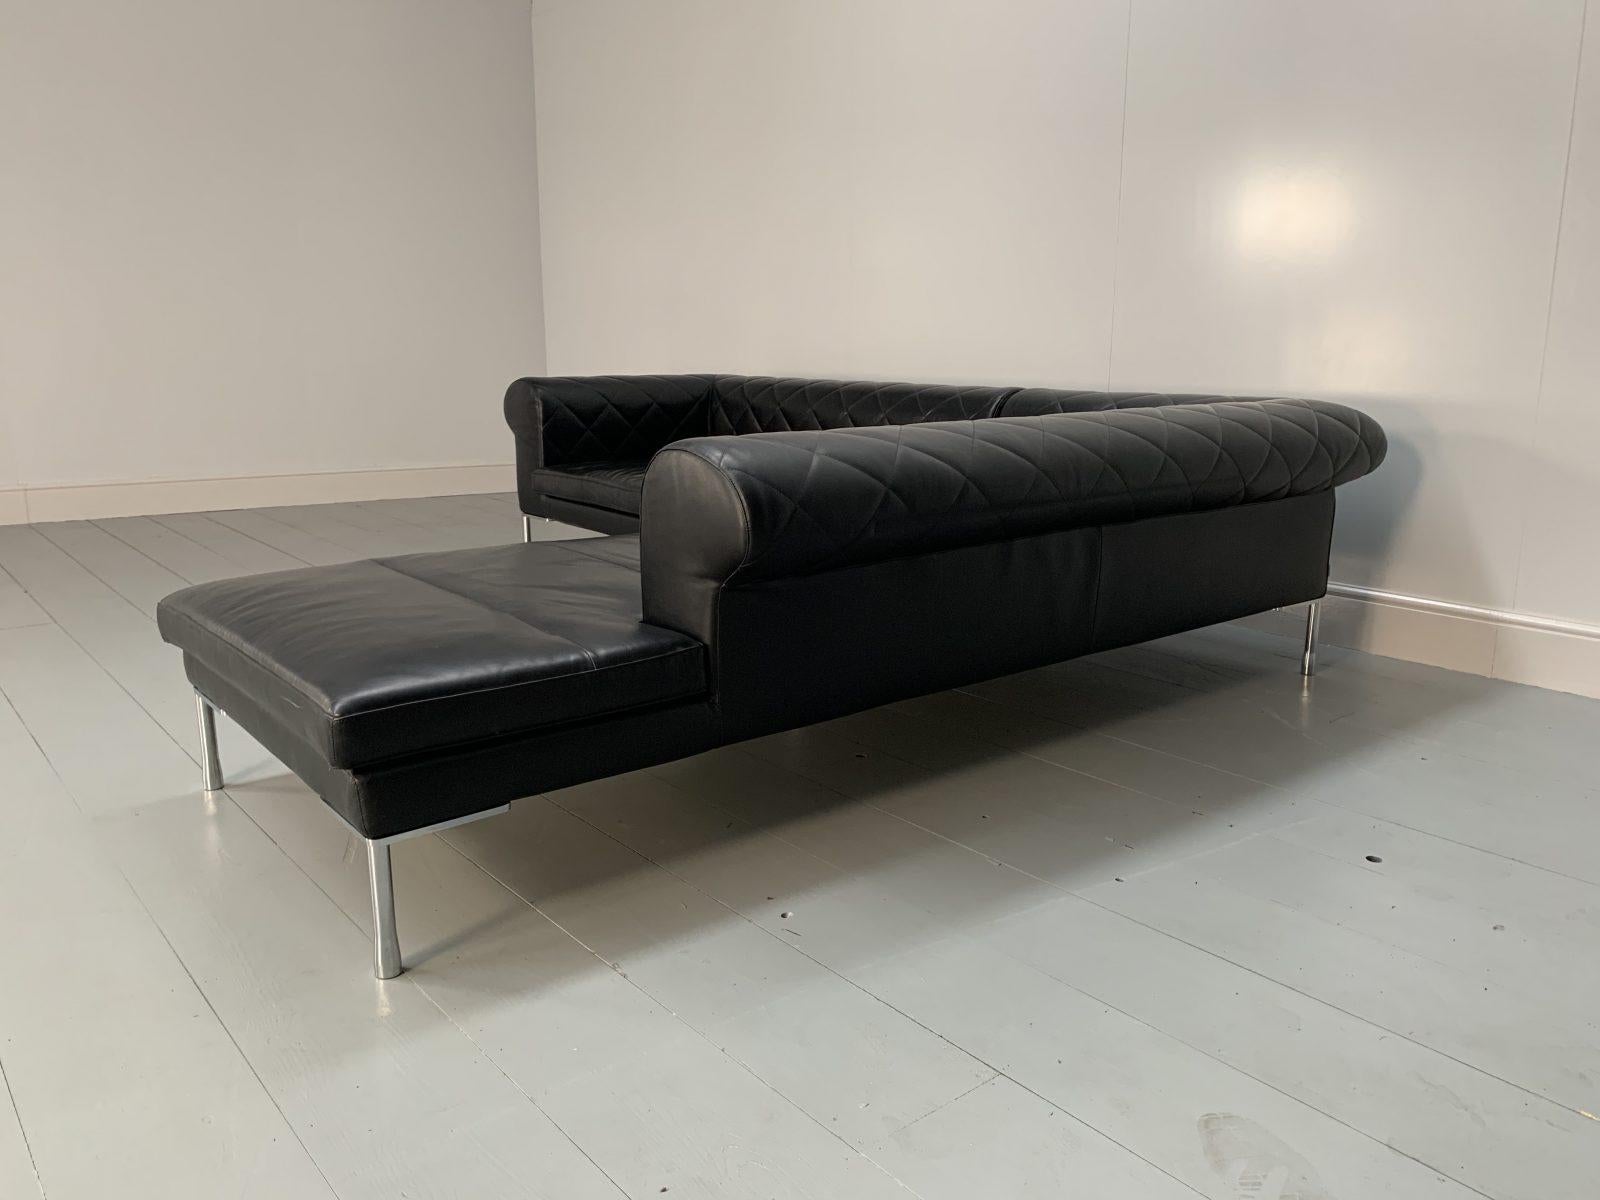 Zanotta “1320 Barocco” Sofa, L- Shape 5-Seat, in Black “Pelle” Leather For Sale 2